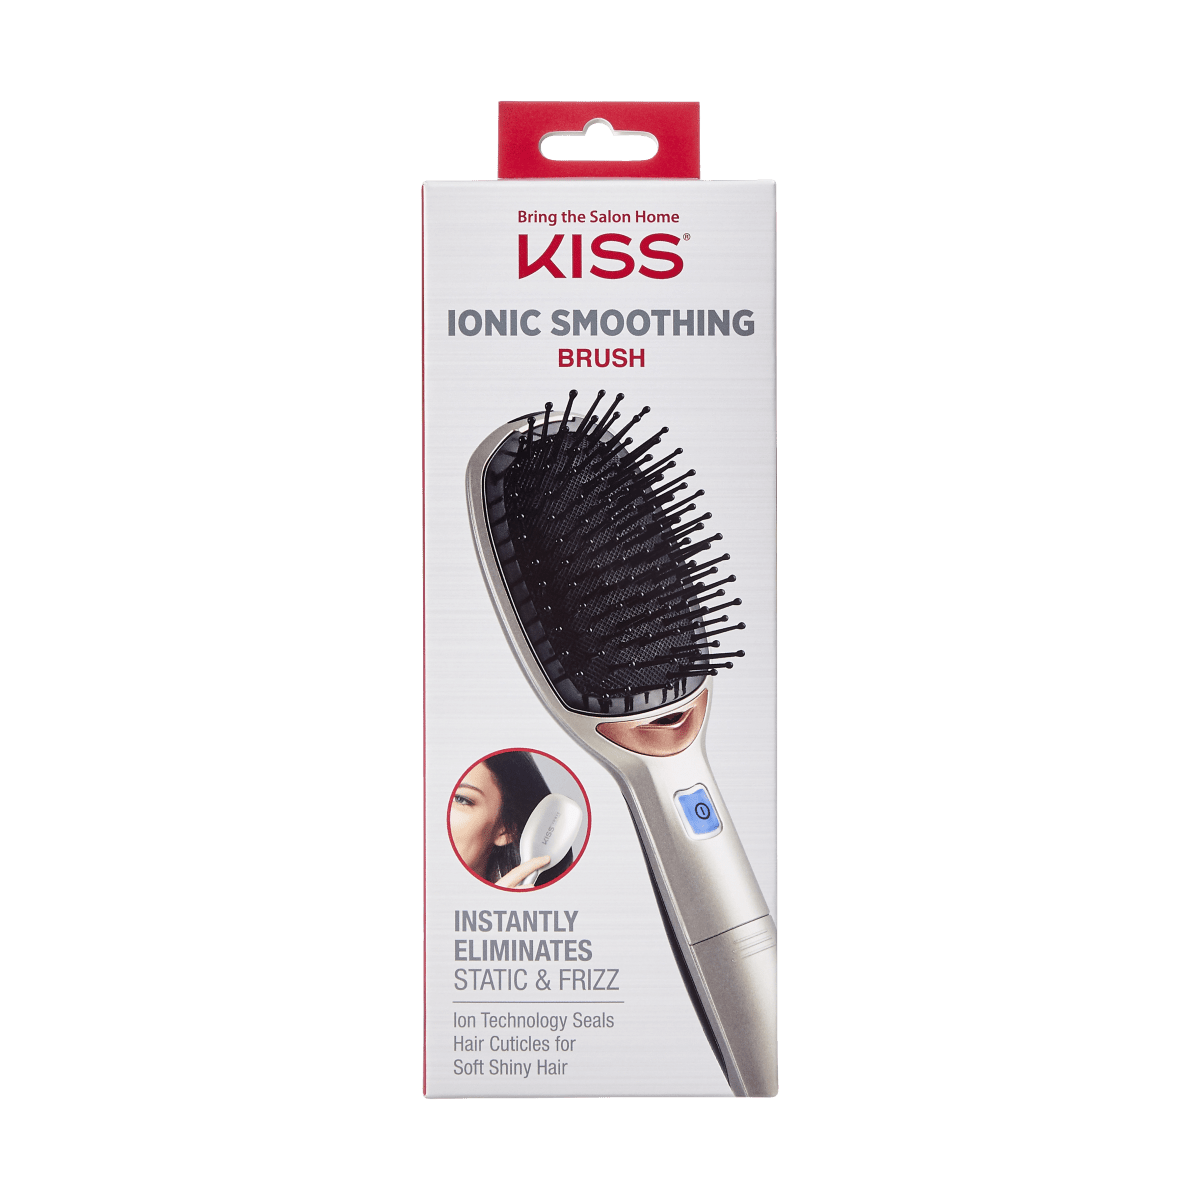 KISS Ionic Smoothing Brush